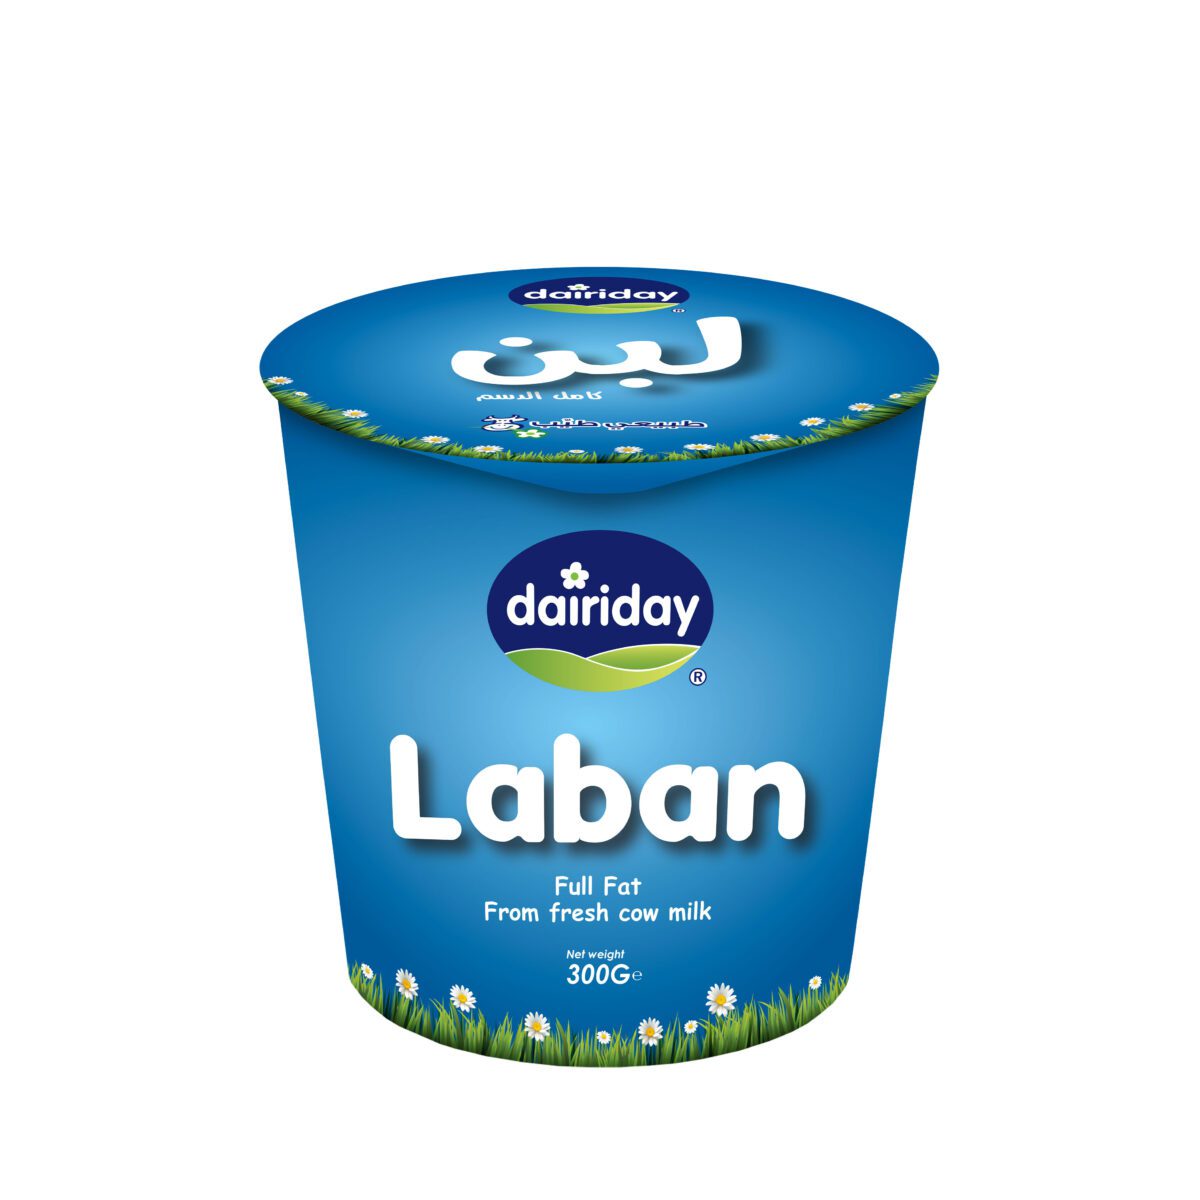 Dairiday-Laban-300g